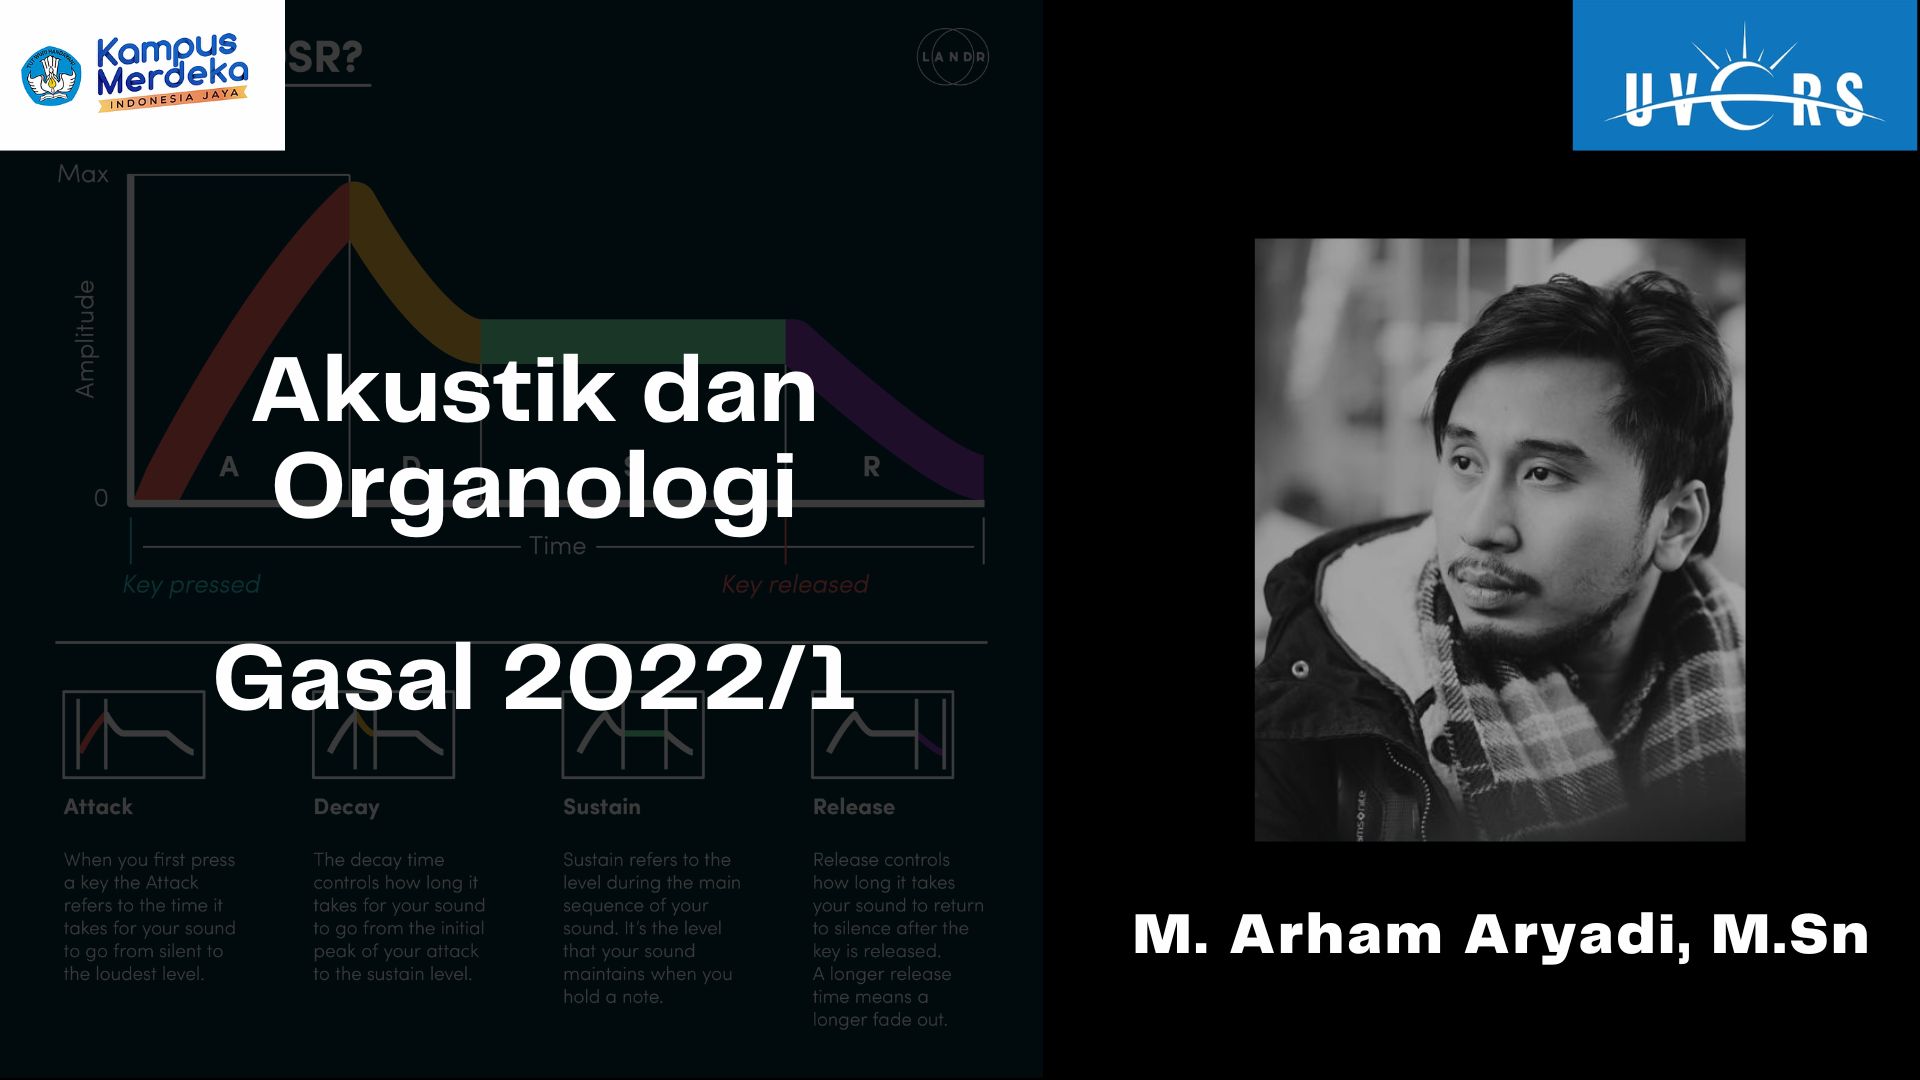 Akustik dan Organologi 2022/1